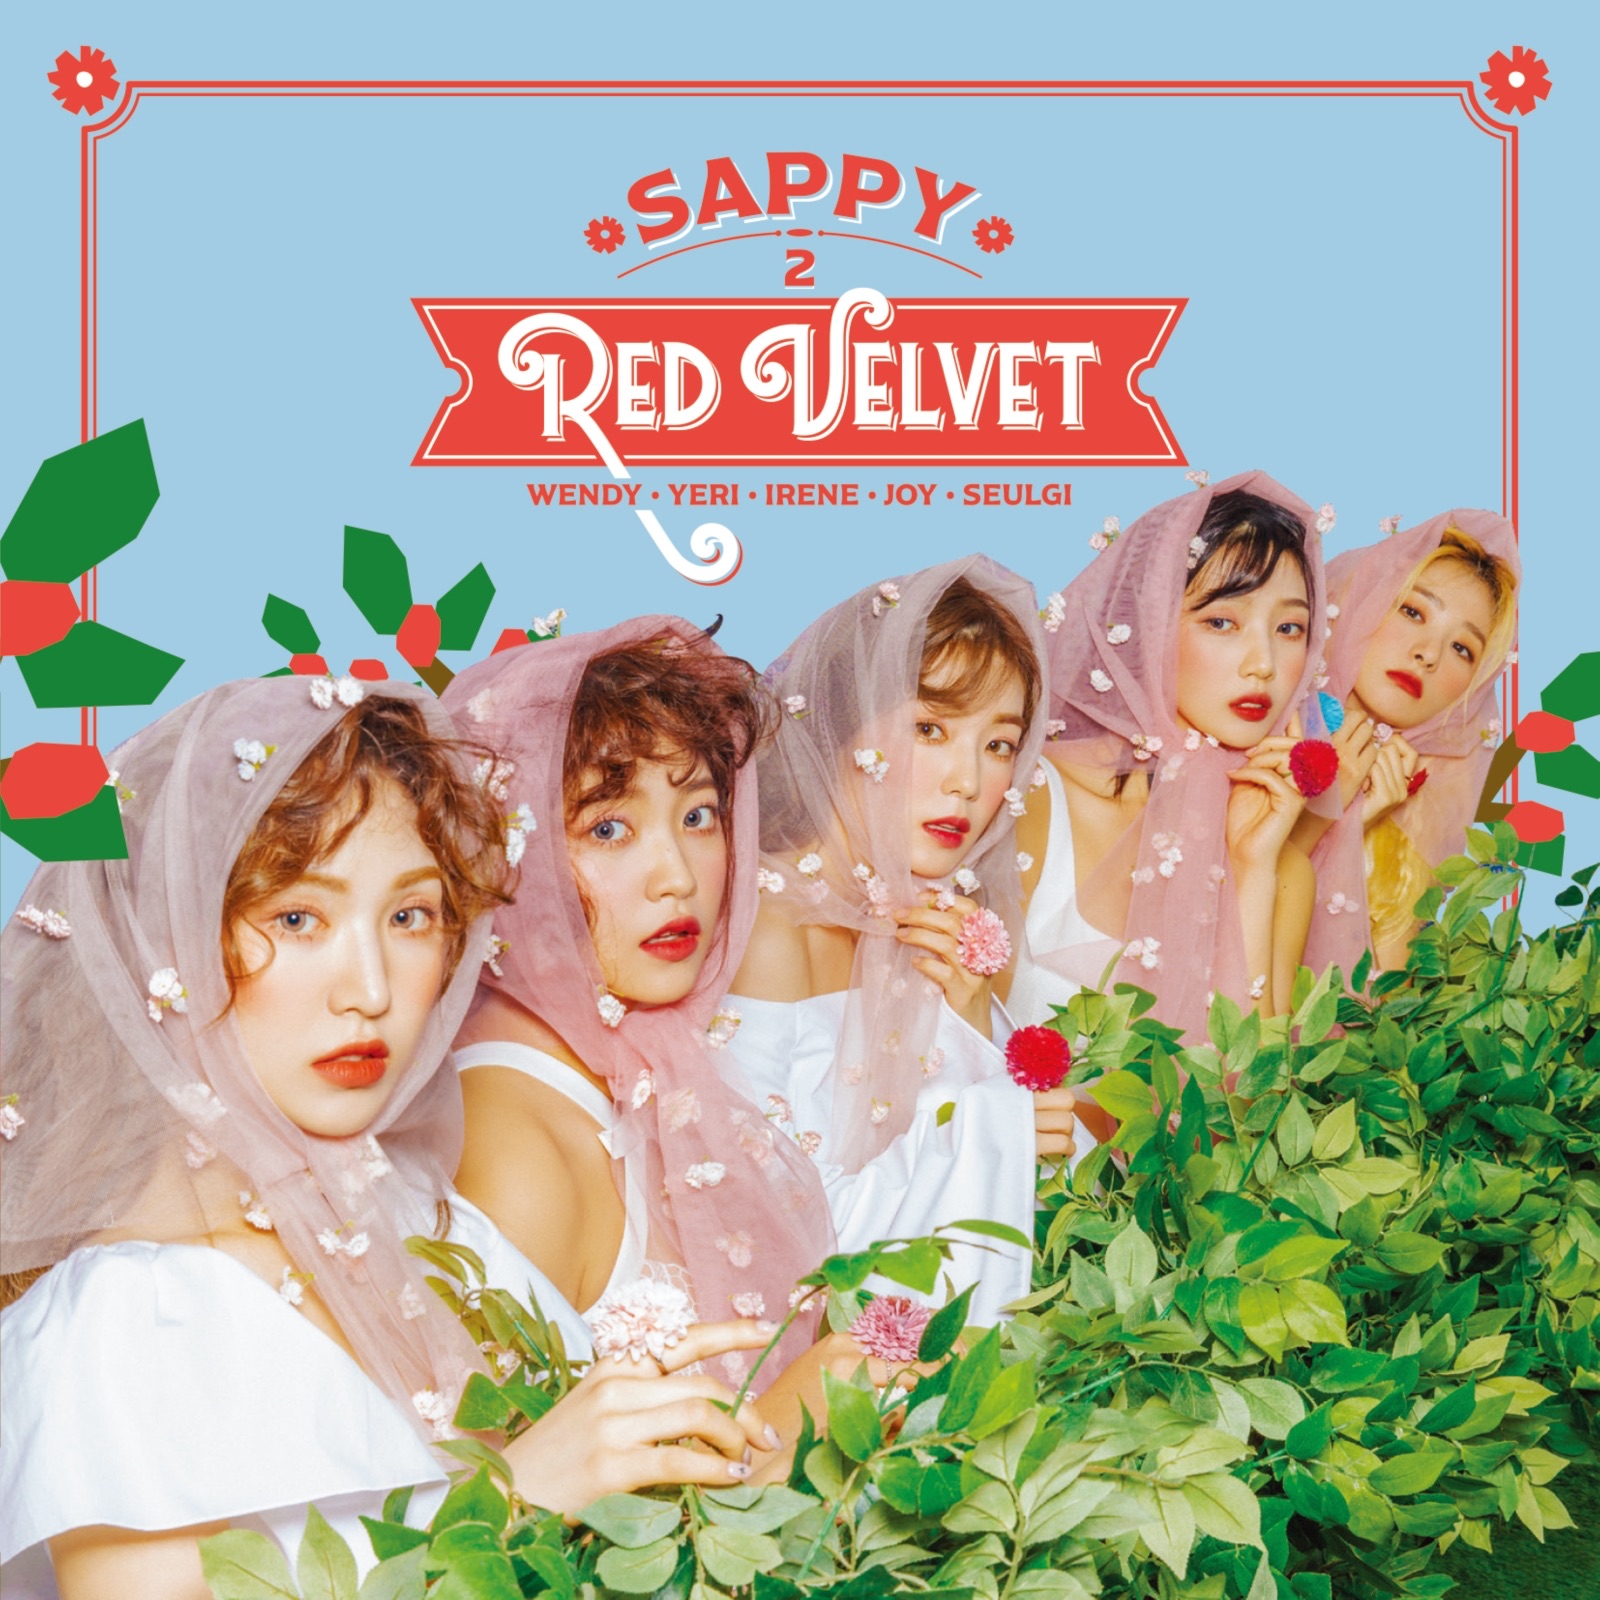 Red Velvet SAPPY cover artwork